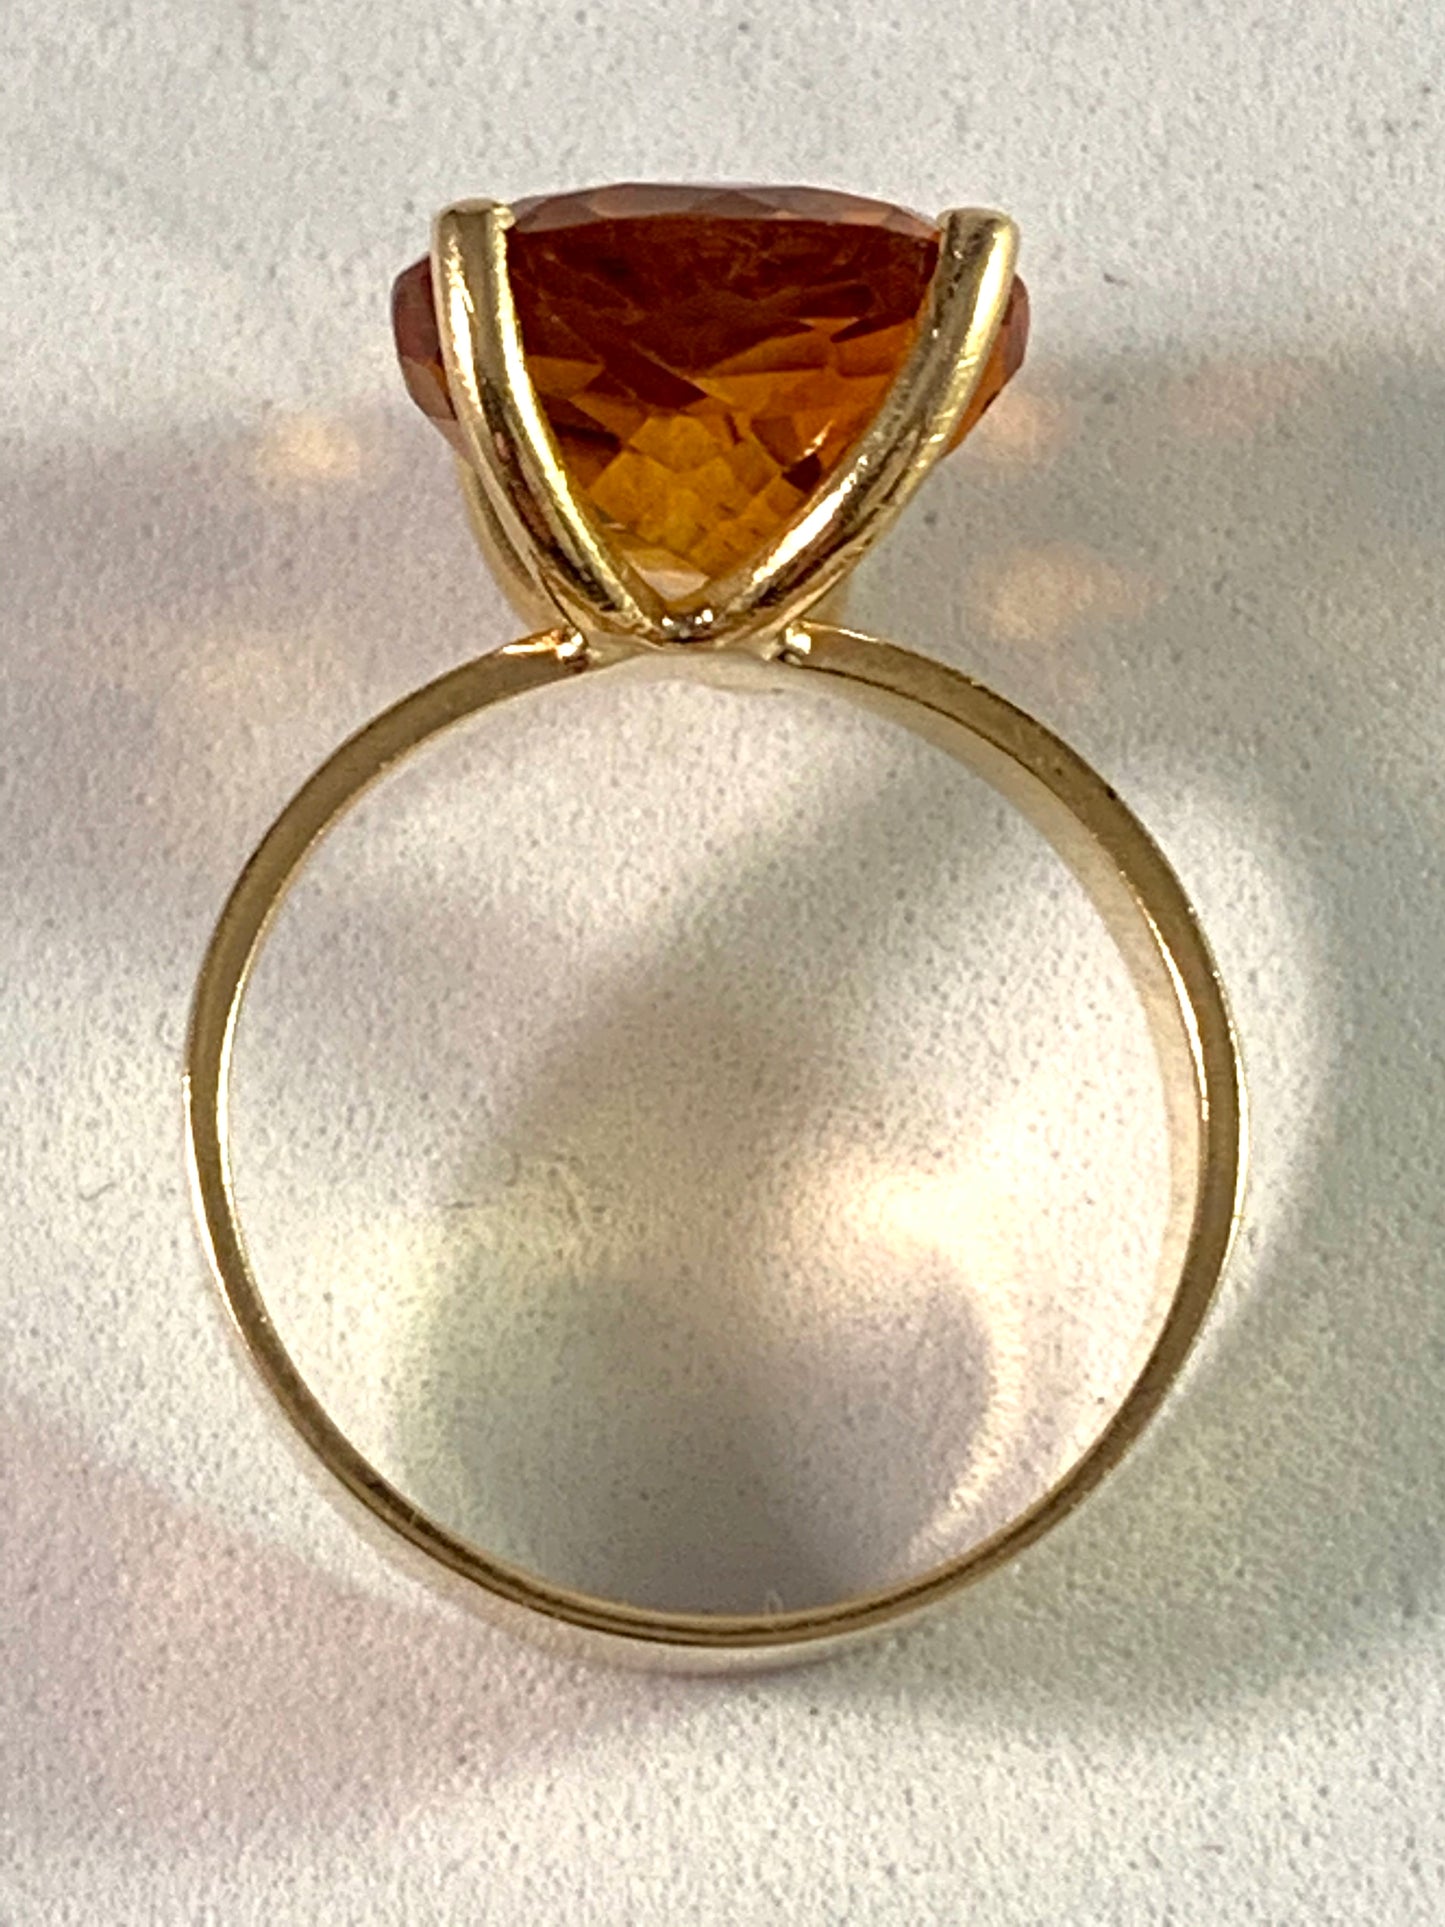 Örneus, Sweden year 1976 18k Gold Citrine Ring.